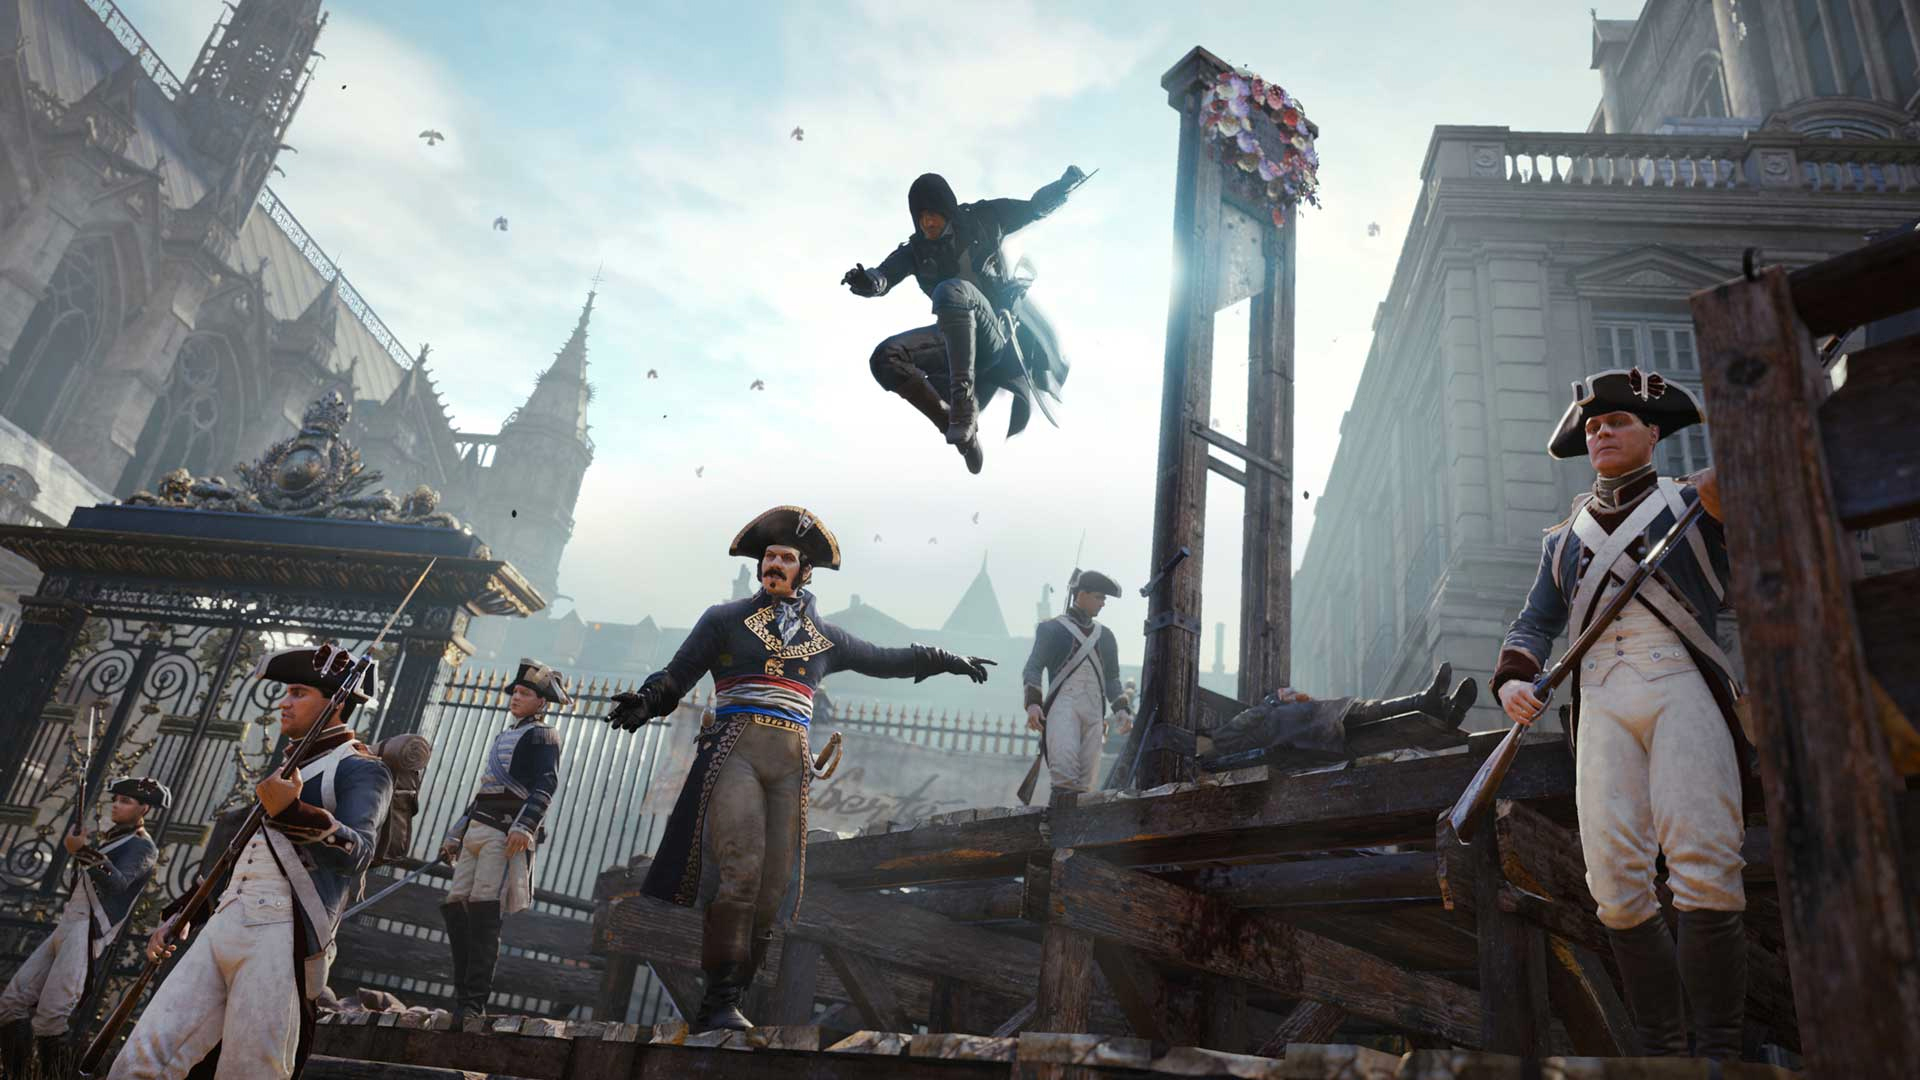 Assassin's Creed - Unity - Xbox One - ZEUS GAMES - A única loja Gamer de BH!